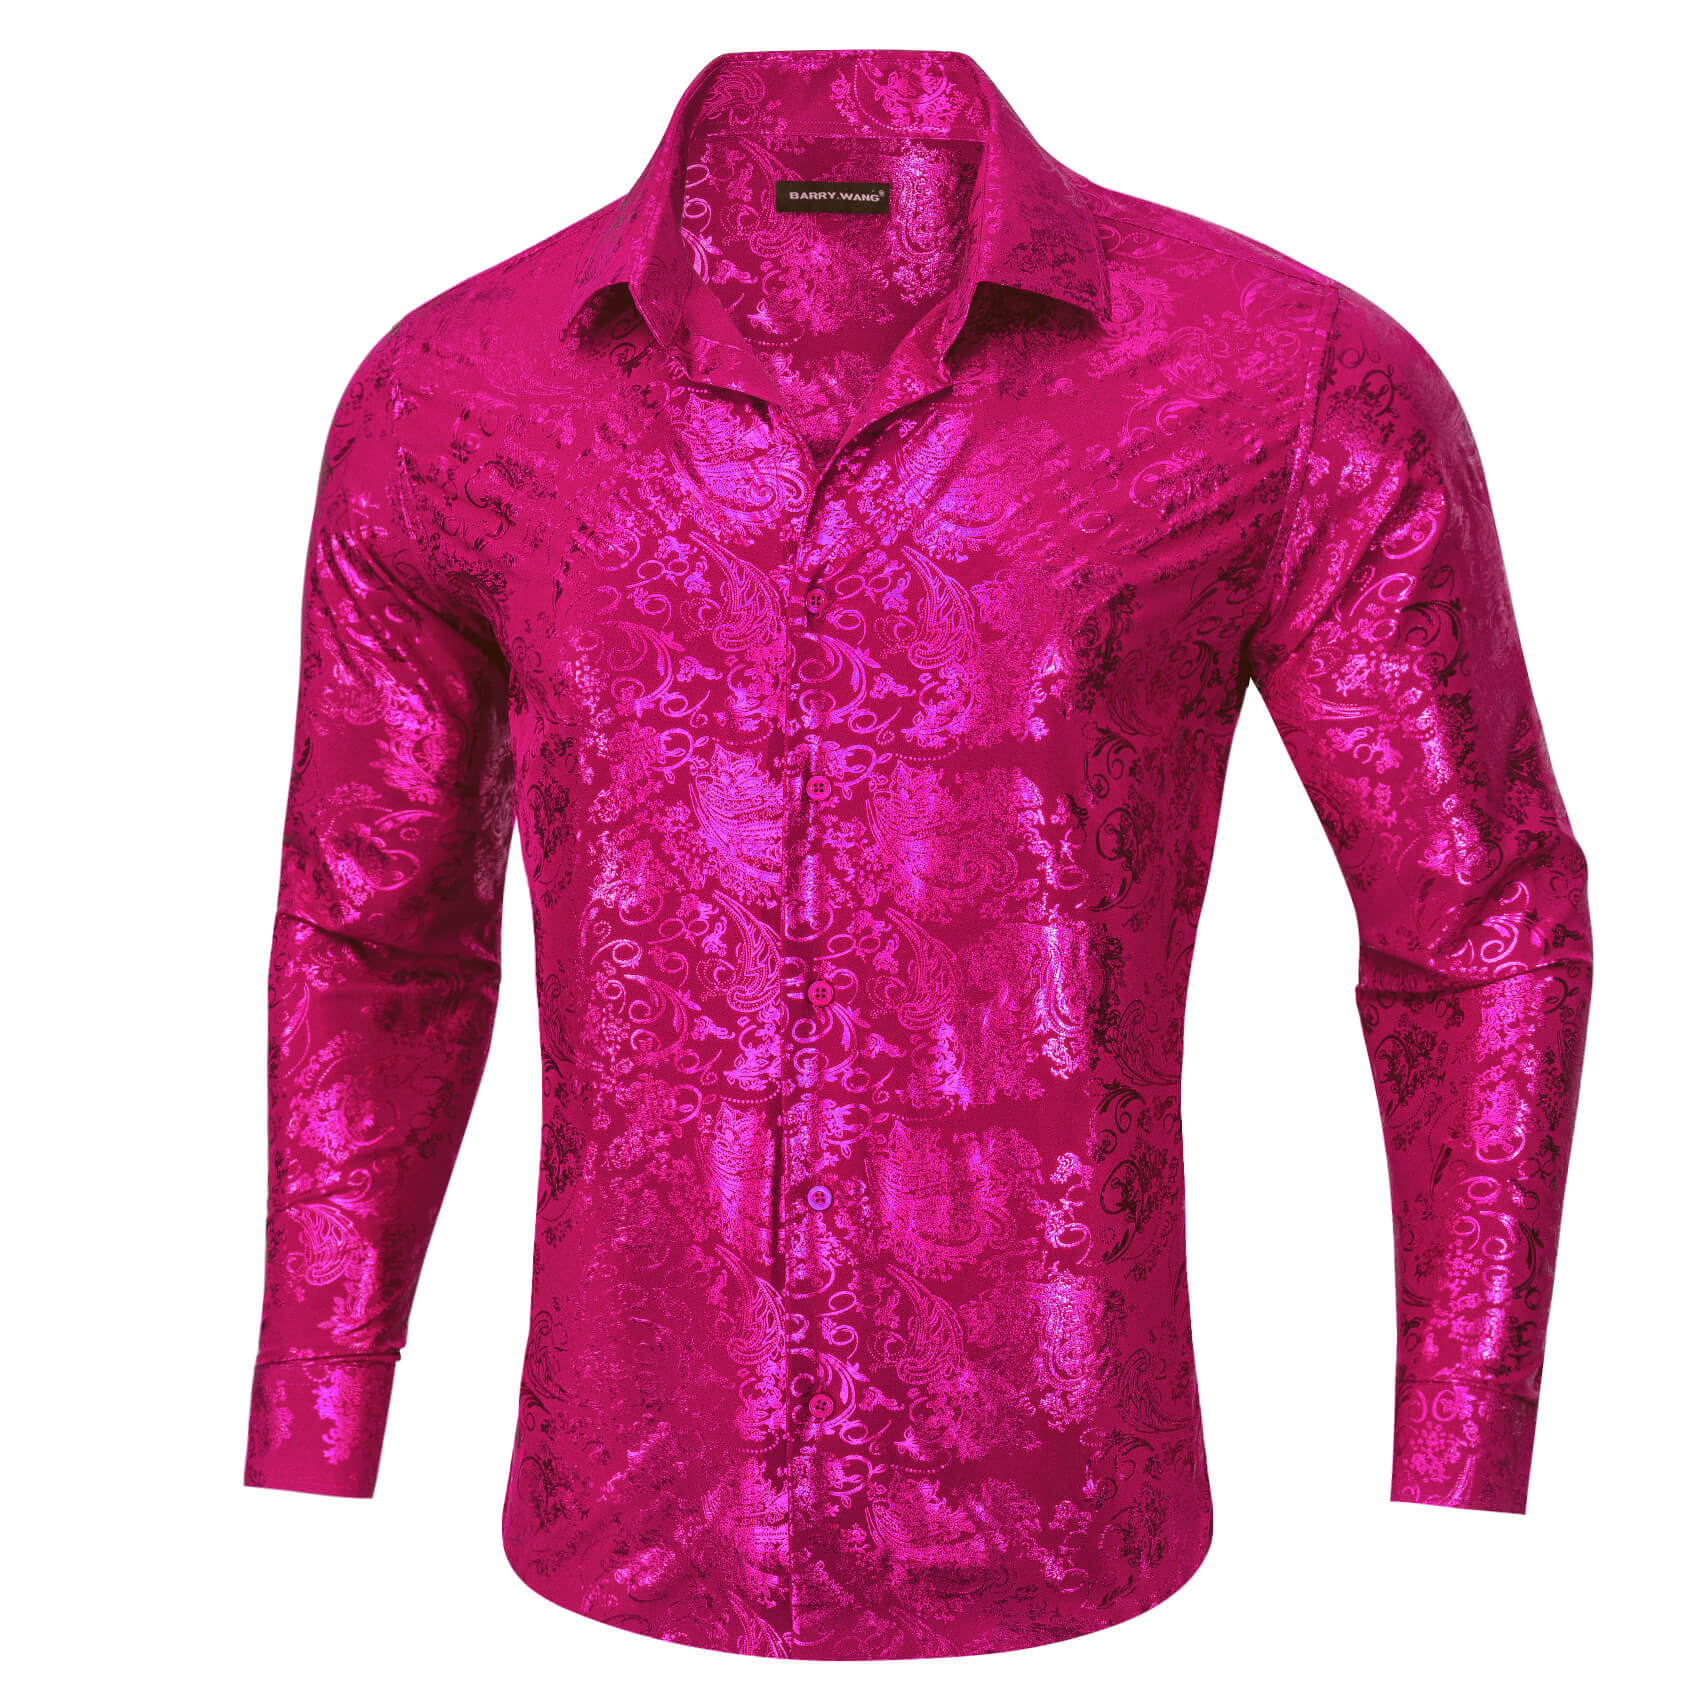 Barry.wang Men's Shirt Magenta Pink Bronzing Floral Button Down Long Sleeve Shirt